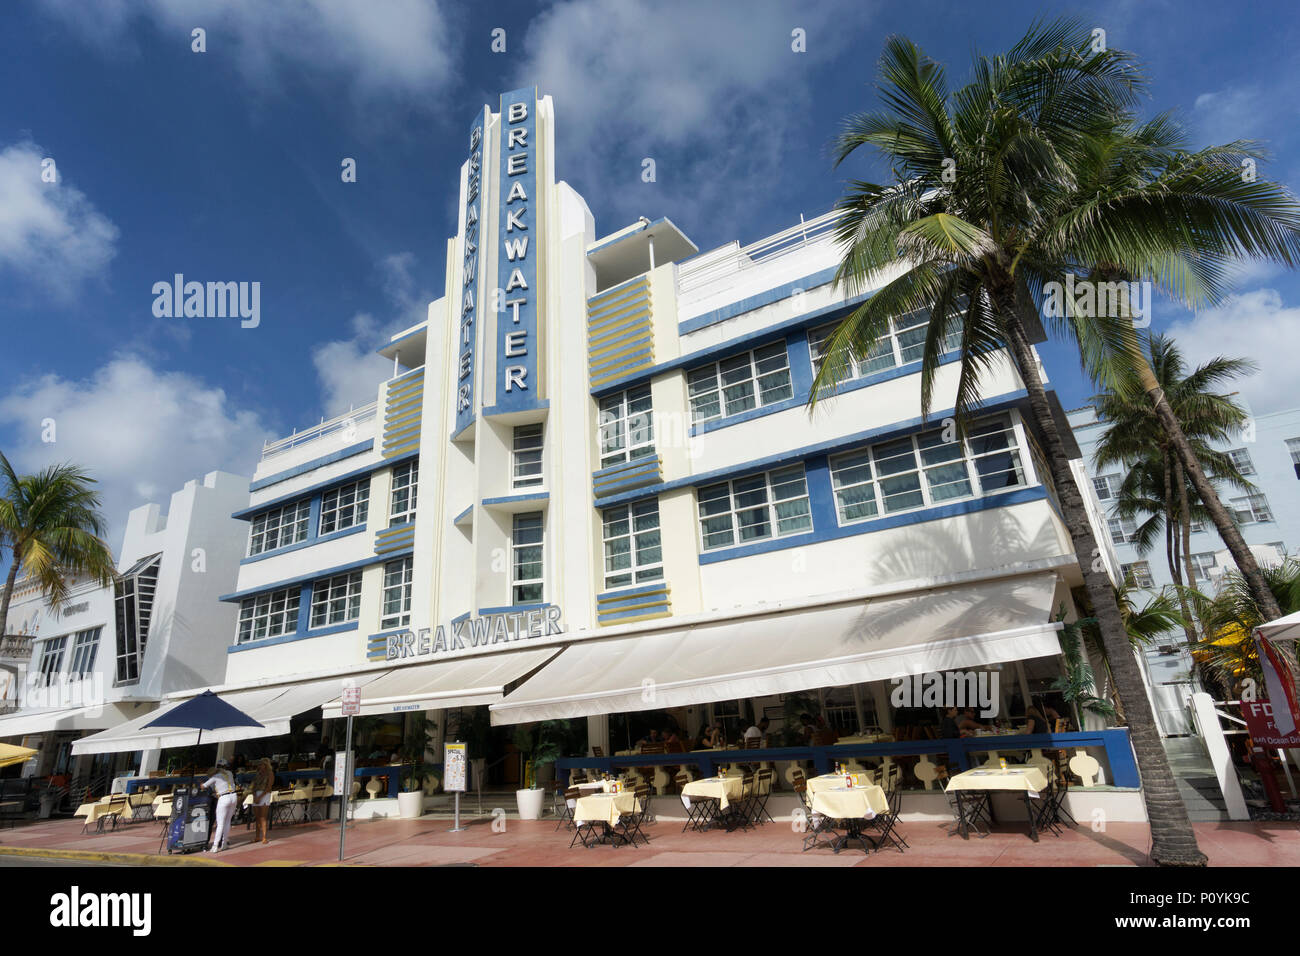 MIAMI BEACH, Floride - le 9 juin 2018 : le célèbre quartier art déco de South Beach, Ocean Drive à Miami, USA Banque D'Images